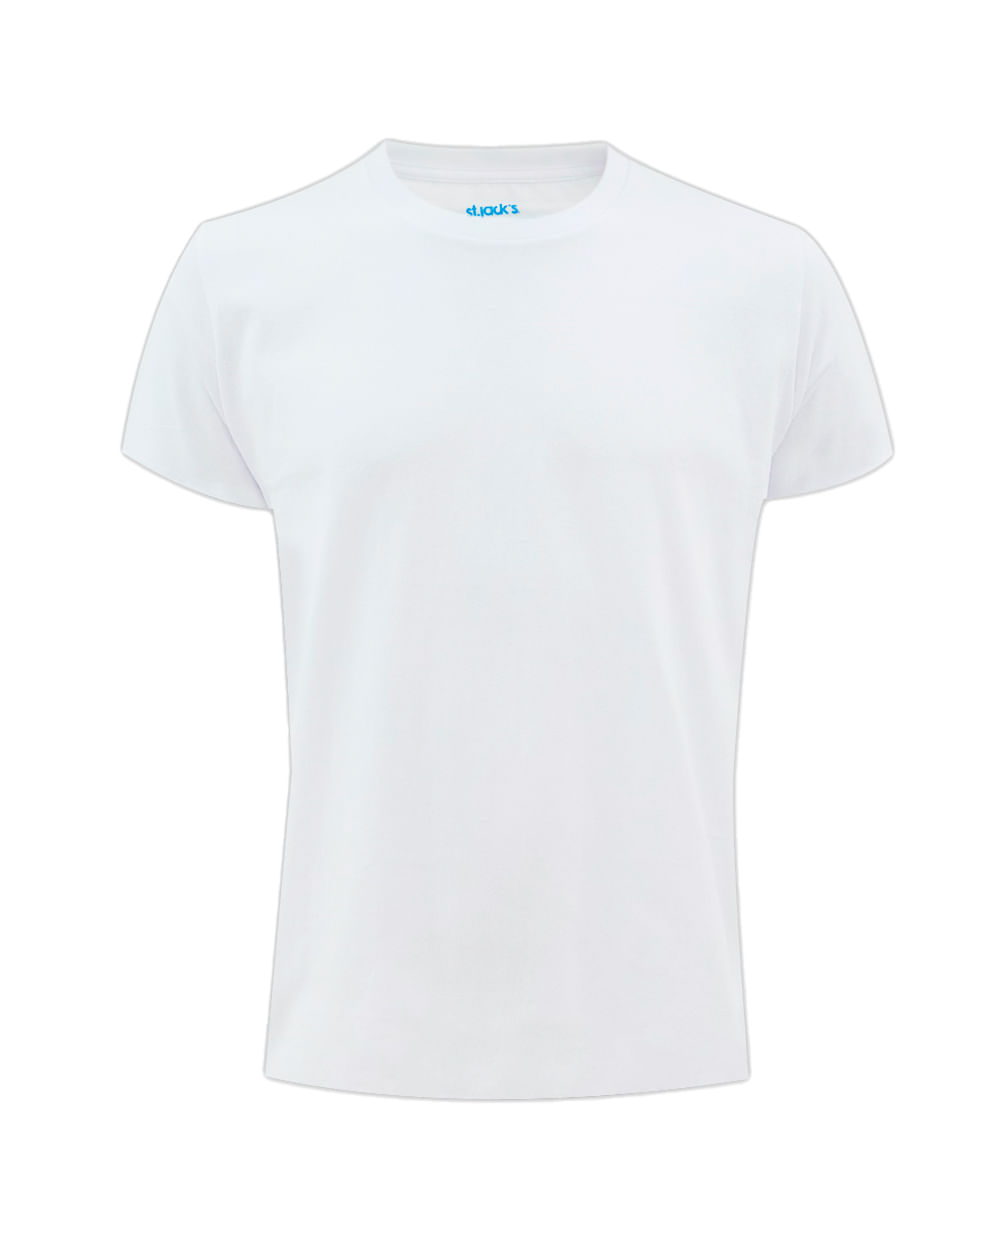 Las mejores ofertas en Camiseta blanca